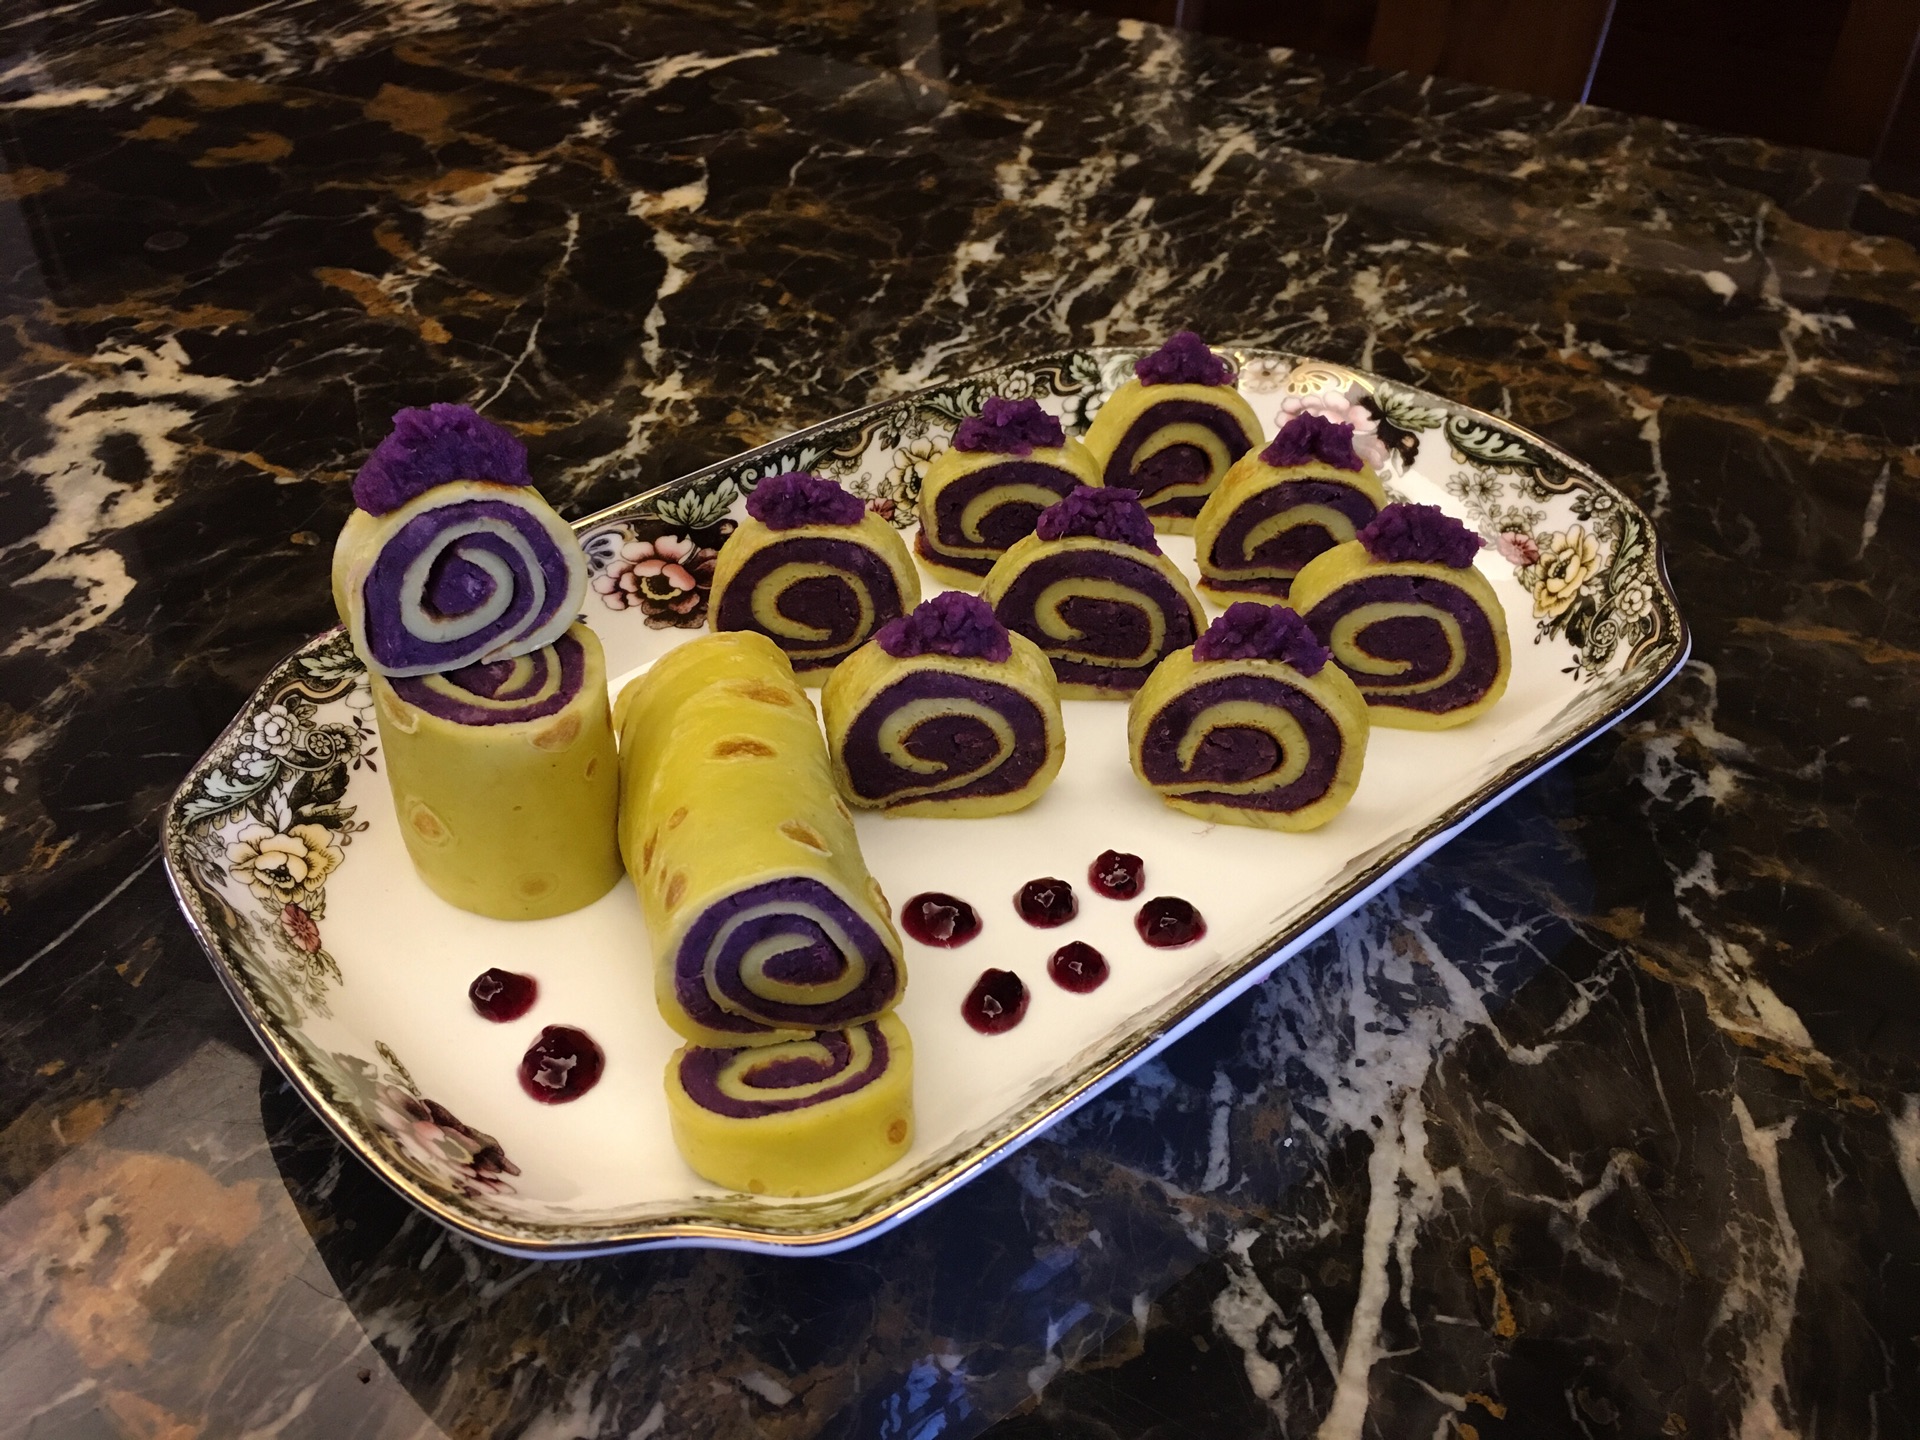 鸡蛋紫薯卷怎么做_鸡蛋紫薯卷的做法_小跳蛙love_豆果美食